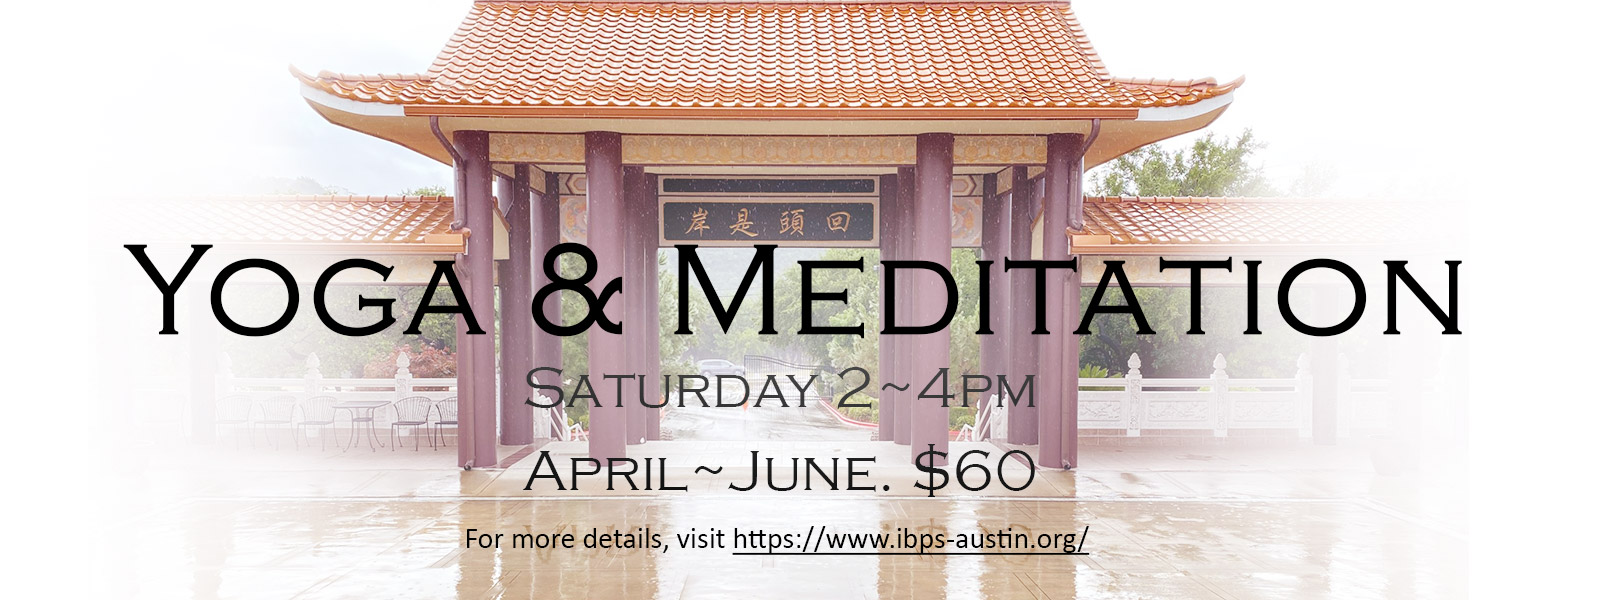 Yoga and meditation, Saturday 2-4pm, April-June, $60